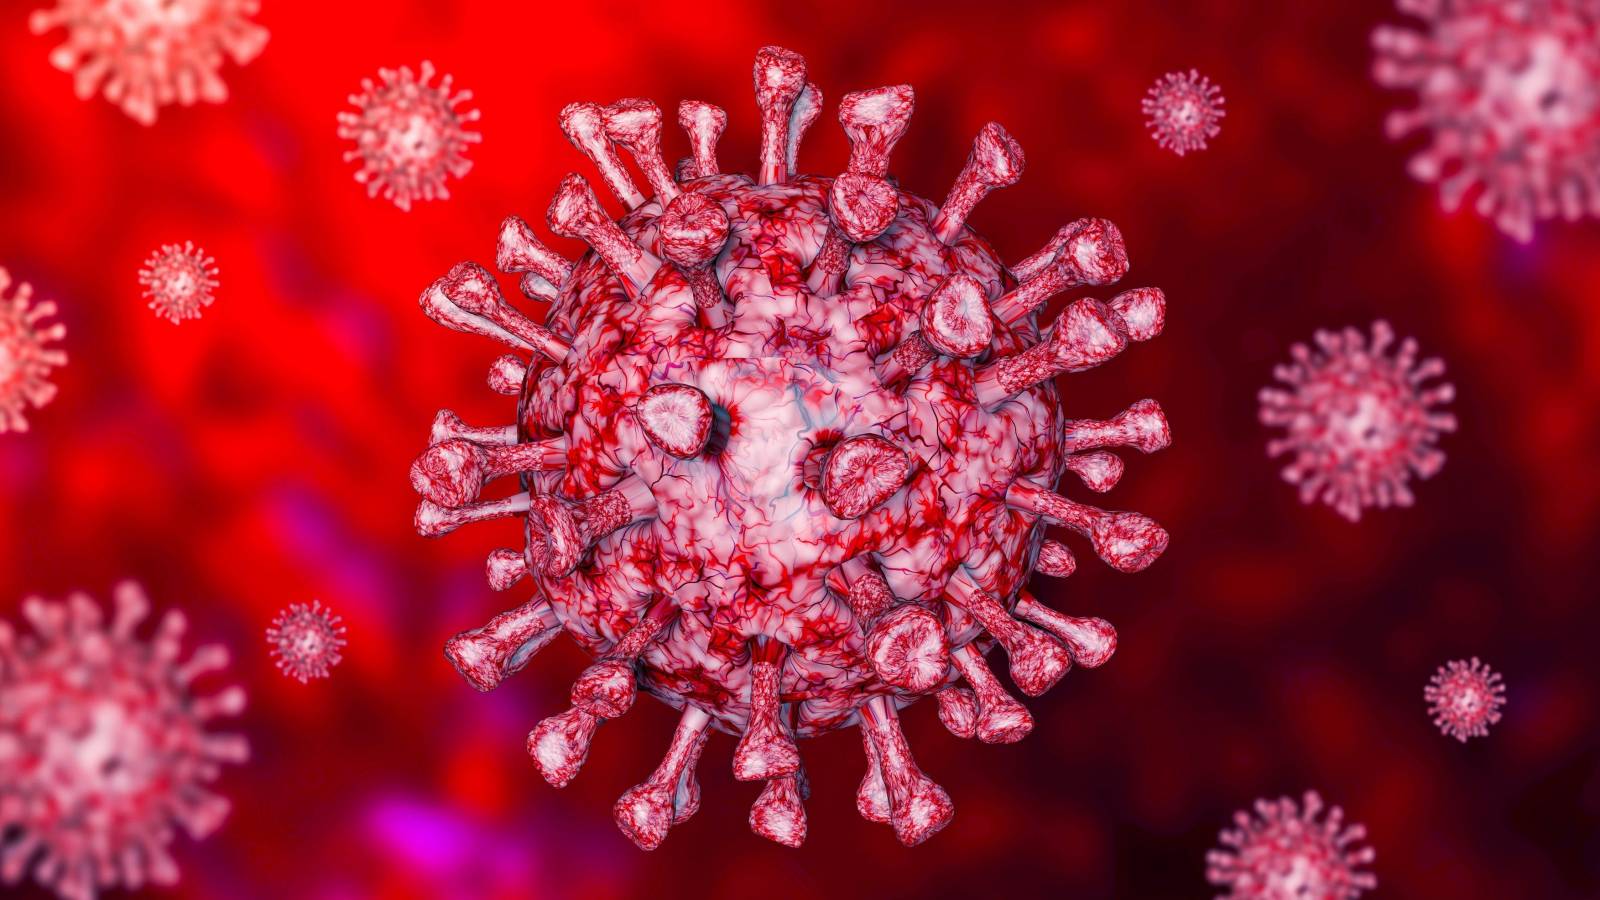 Coronavirus Rumänien OFFIZIELLE Anzahl neuer Fälle am 19. September 2021